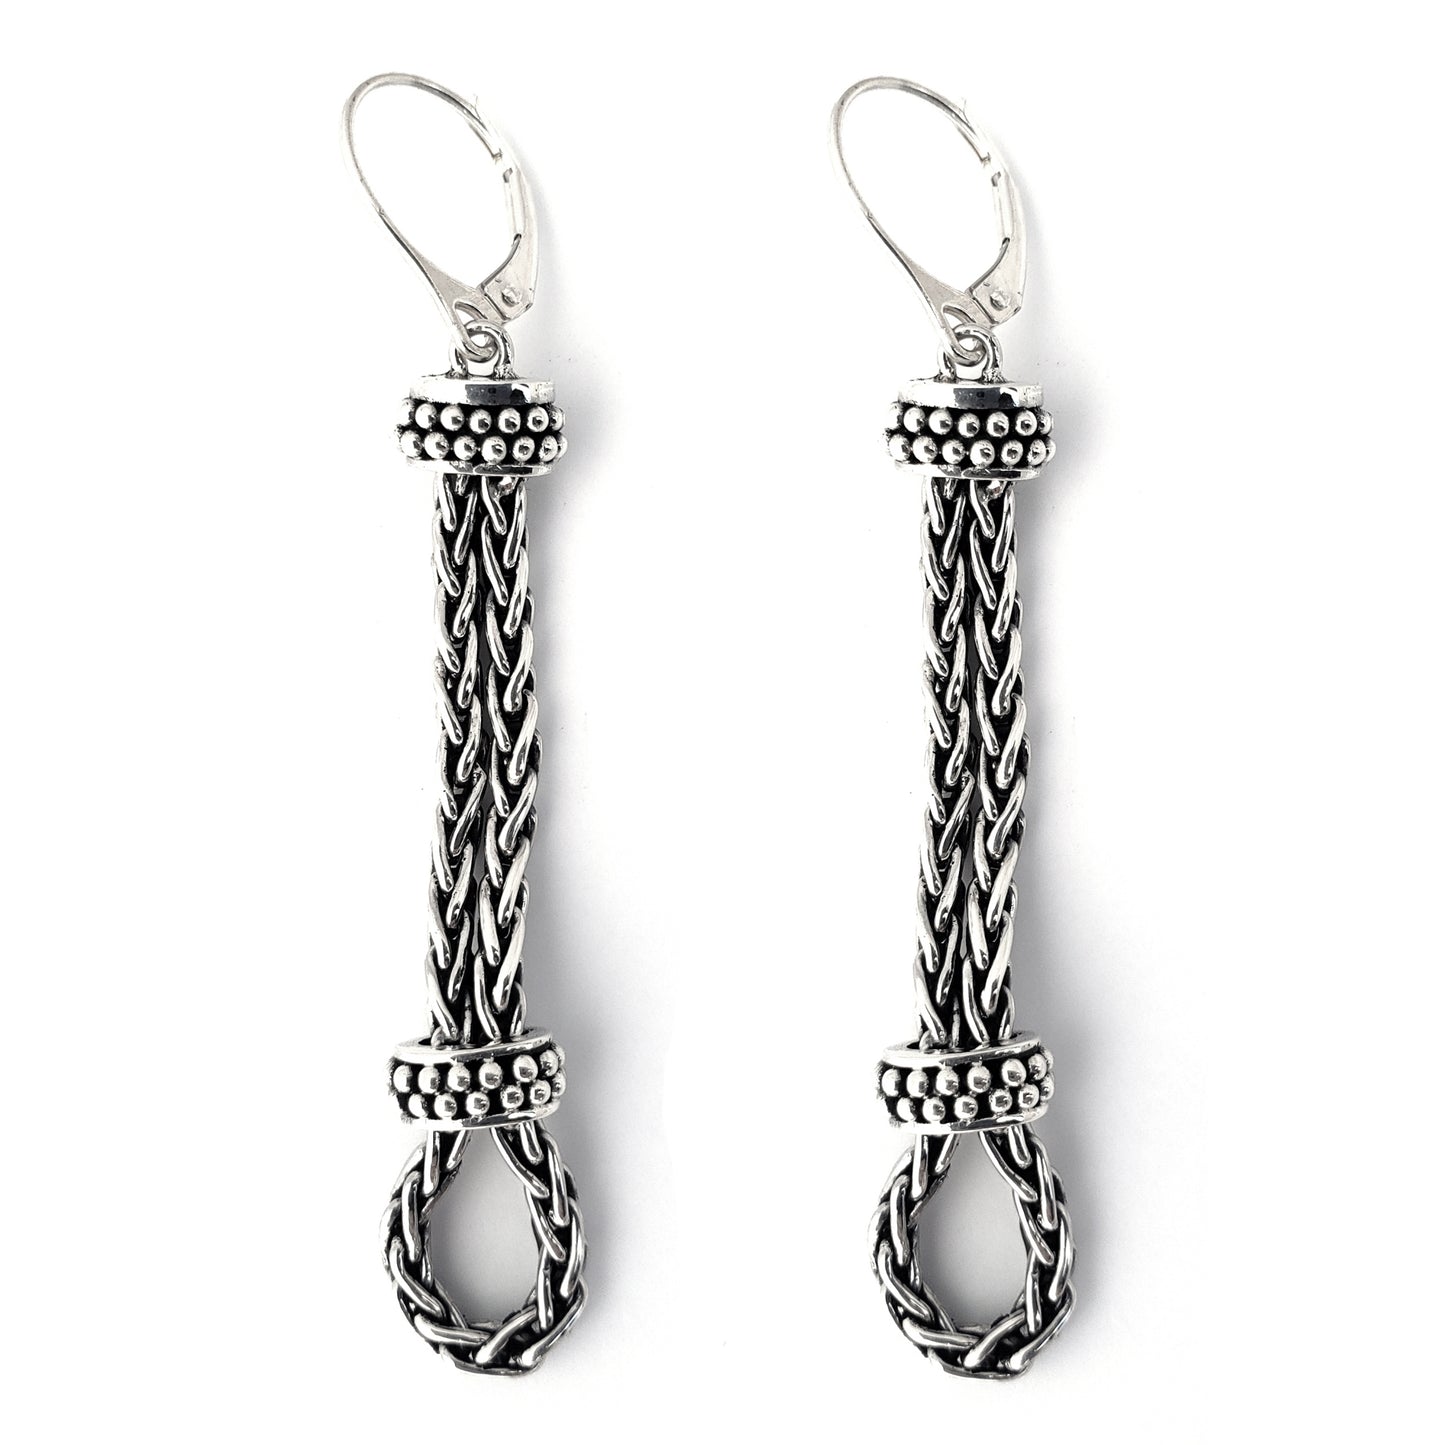 E415 .925 Sterling Silver Looped Chain Bali Earrings